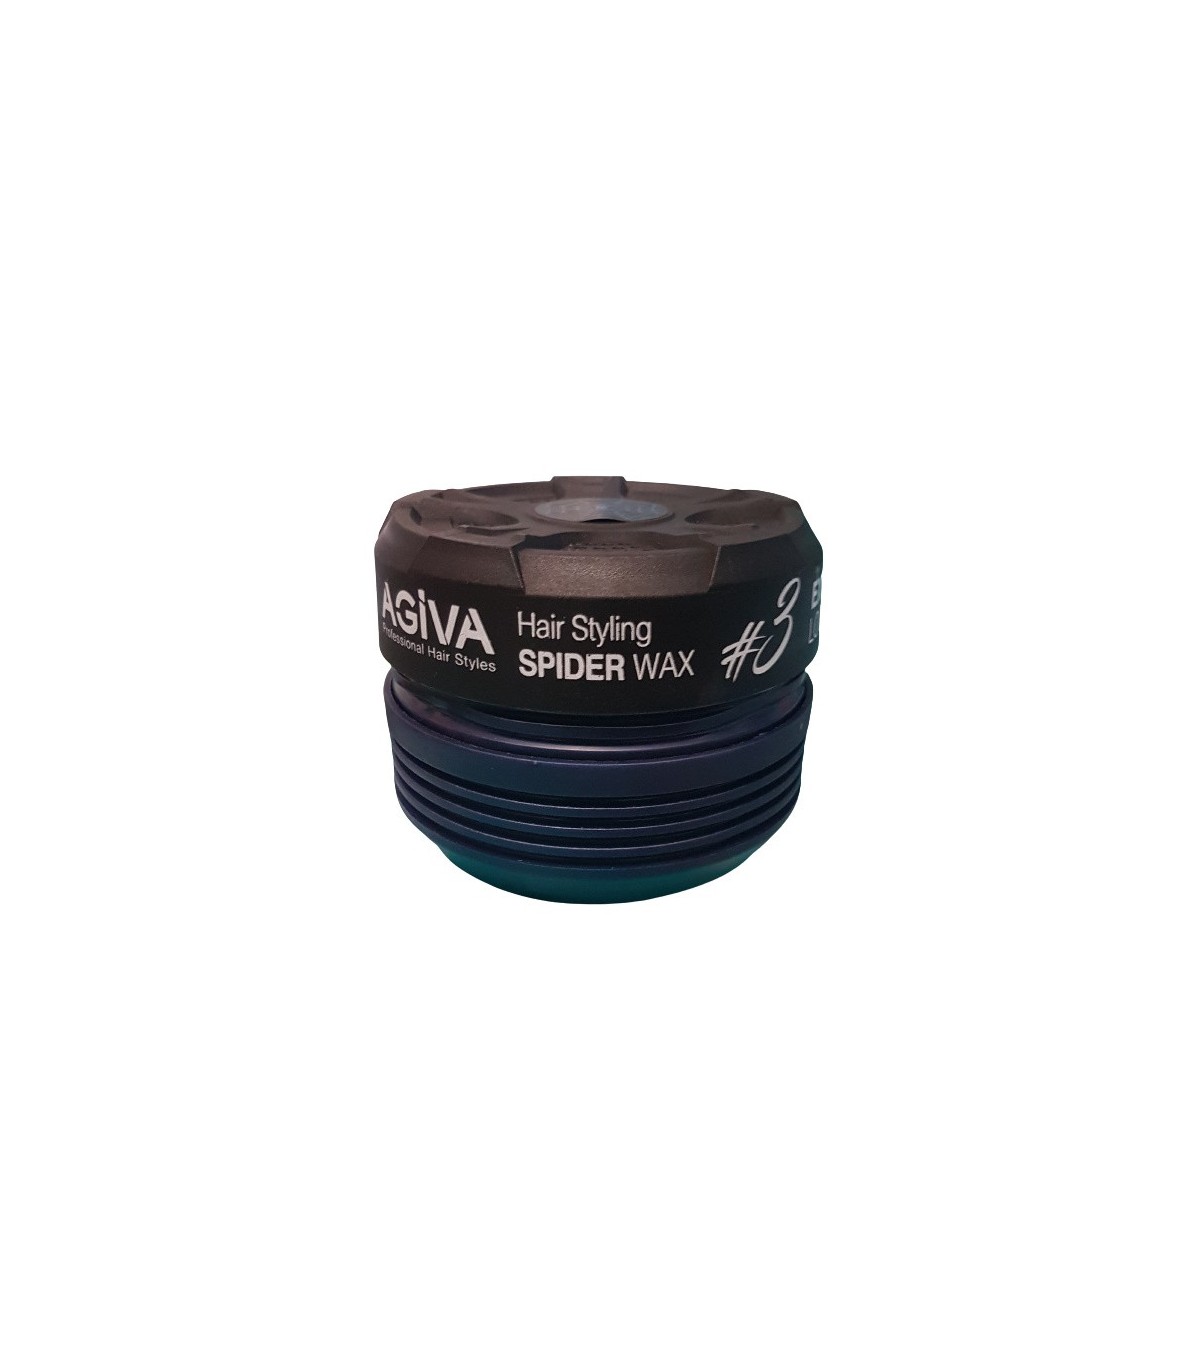 واکس مو اسپایدر آگیوا هشتک 3 سرمه ای AGIVA Hair Styling Spider Wax